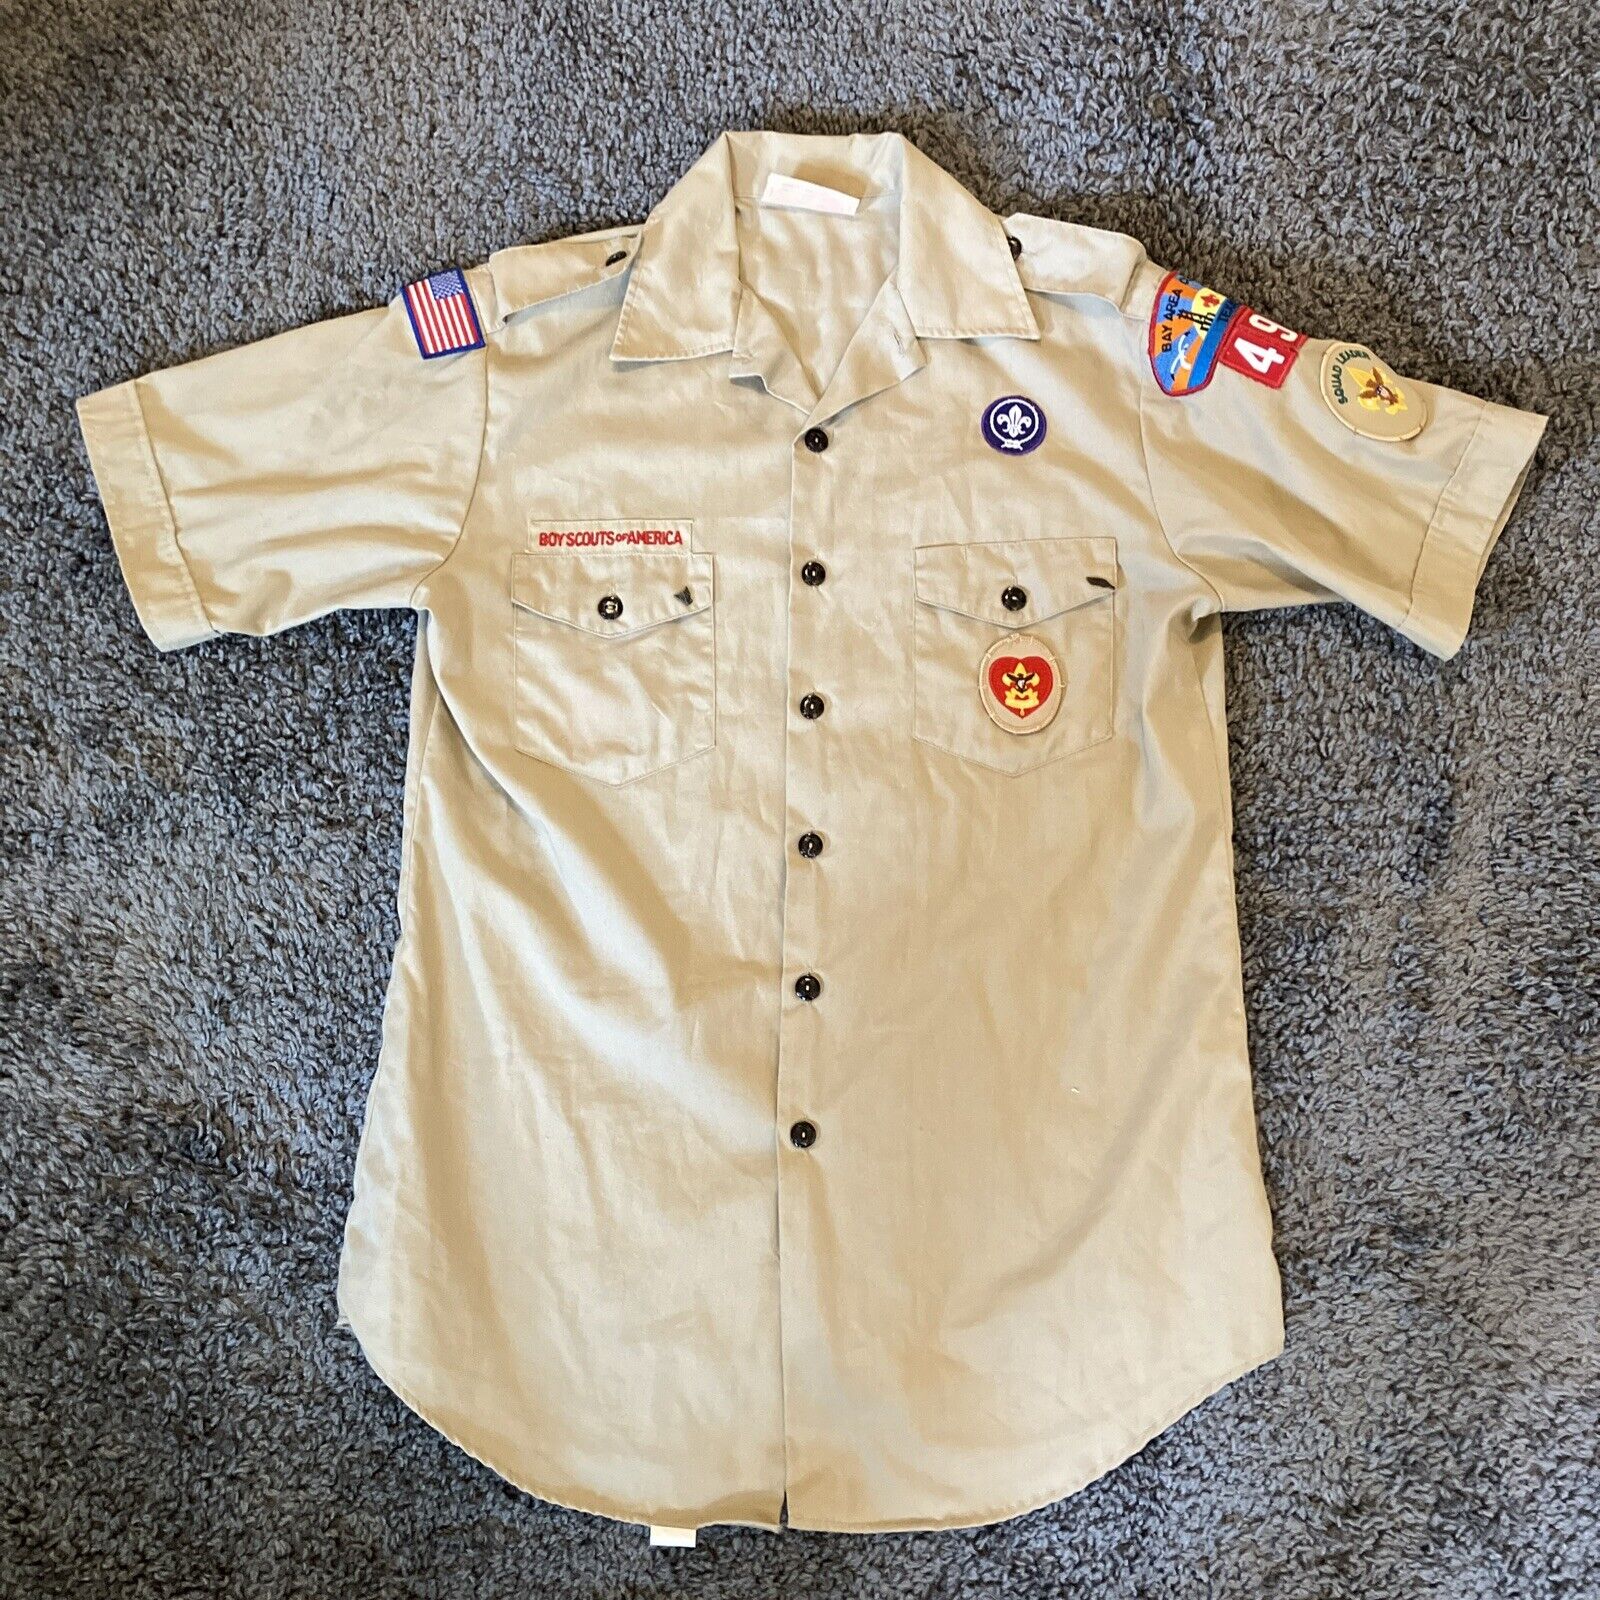 Vintage Boy Scouts Uniform Shirt Short Sleeve Patches Squad Leader Men Medium